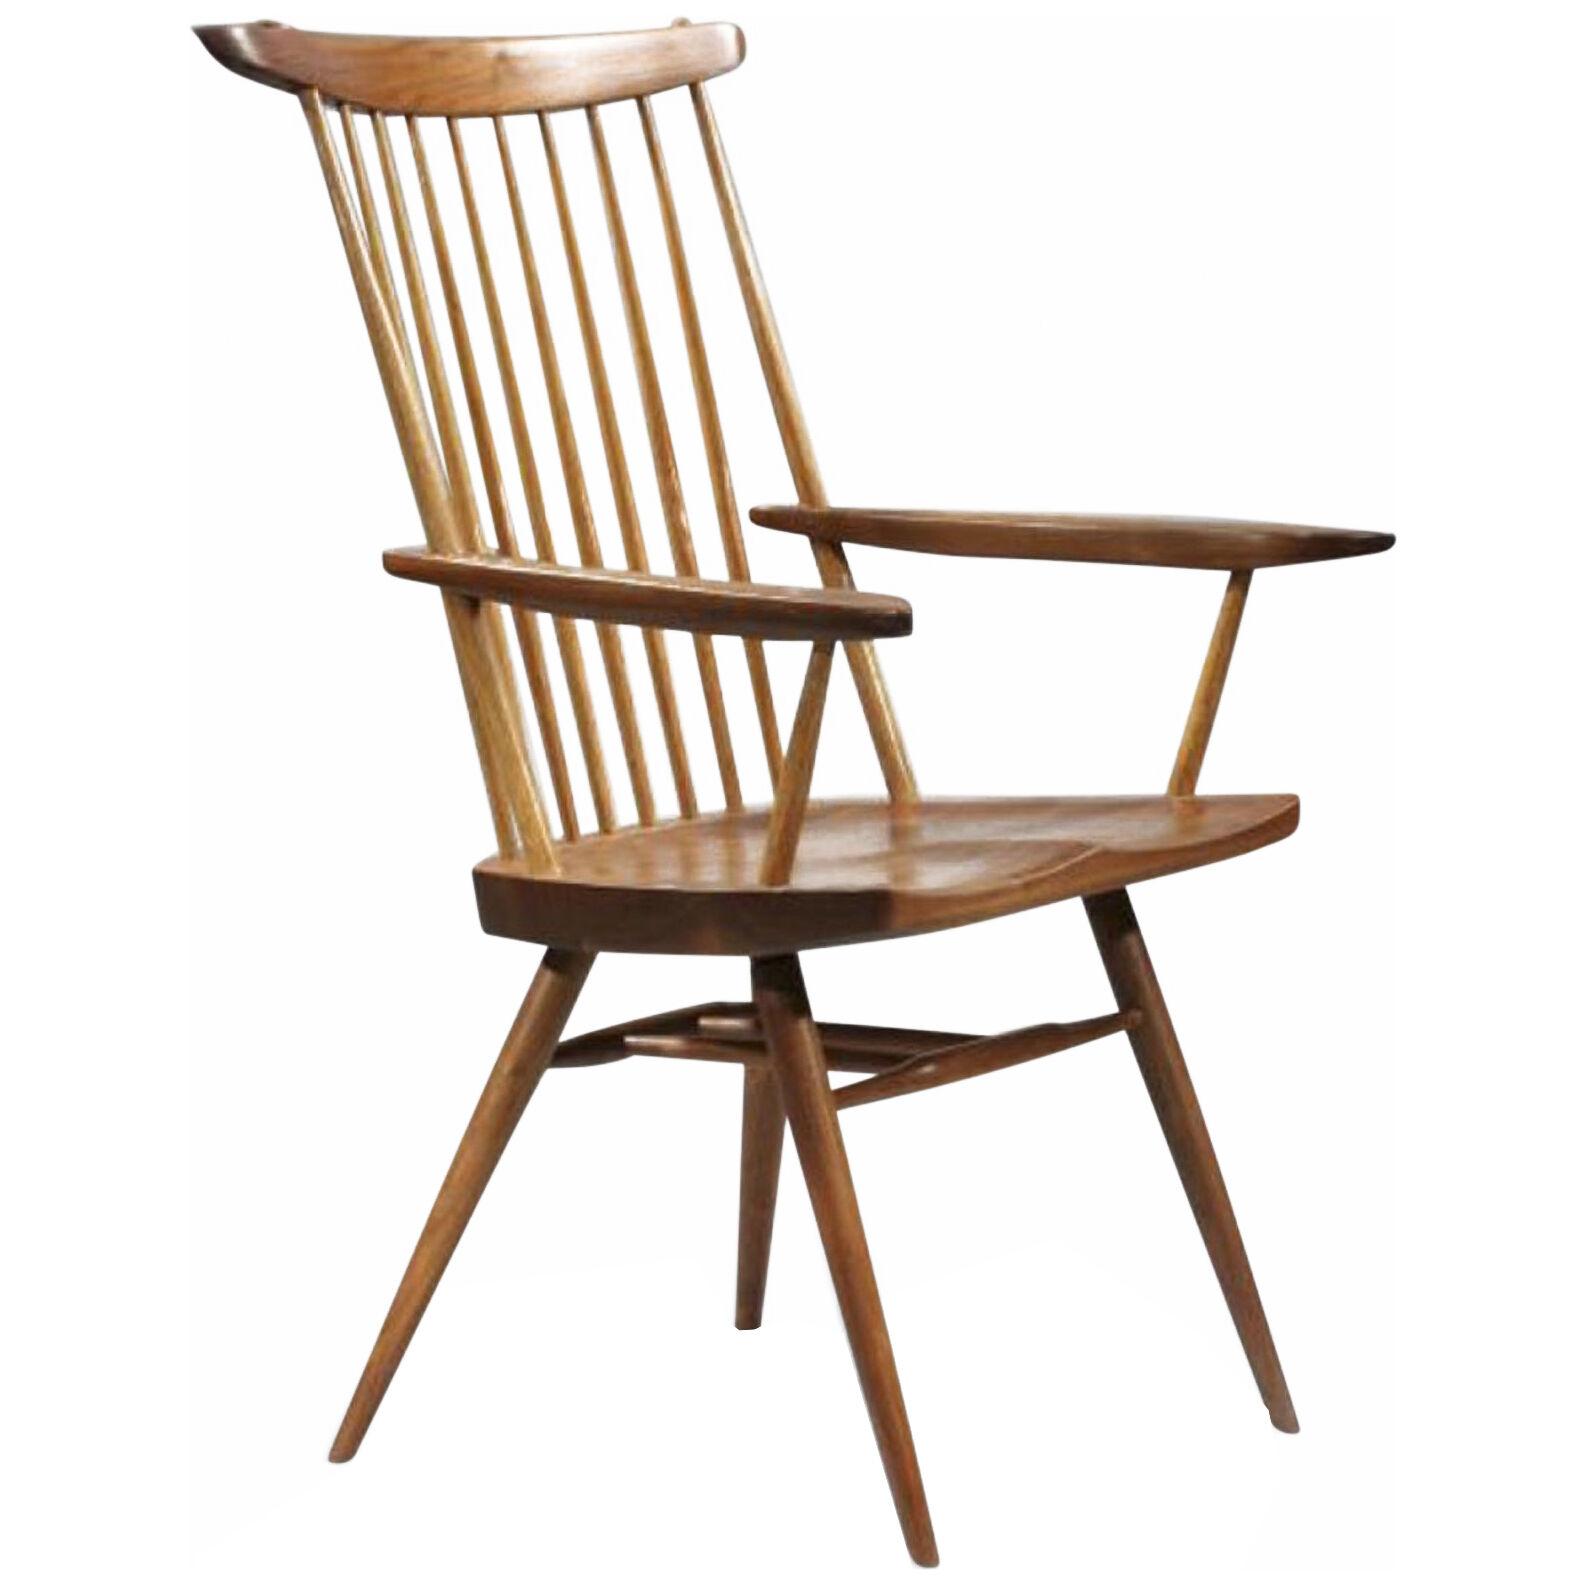 Mid century black walnut armchair, “New” Chair aka Host Chair